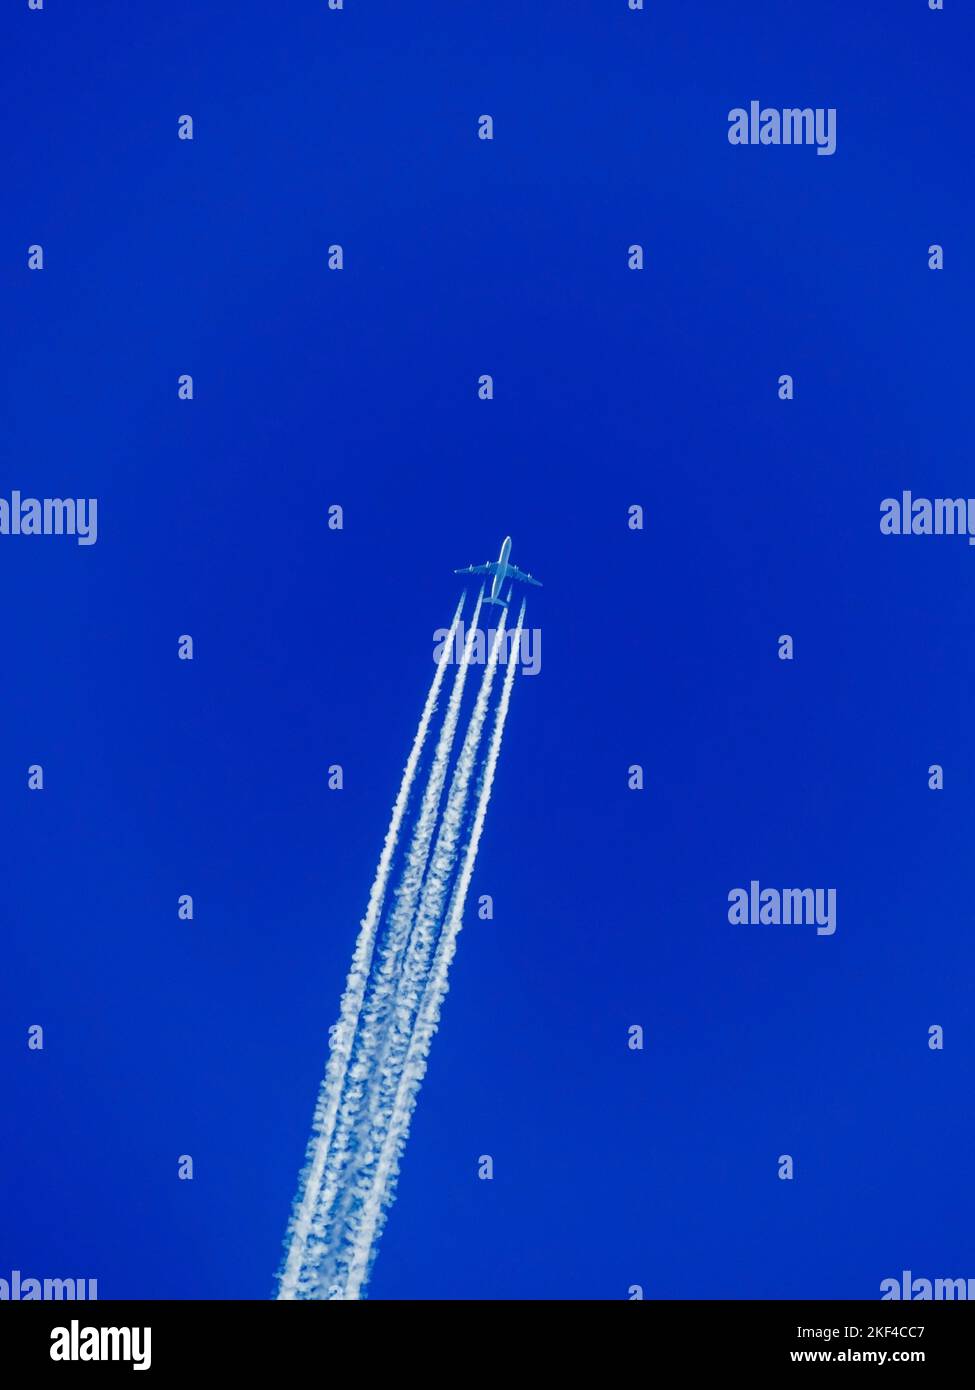 Ein Flugzeug mit Kondensstreifen am blauen Himmel. Flugreise in den Urlaub, Fernweh, Urlaub, Reisen, Stock Photo